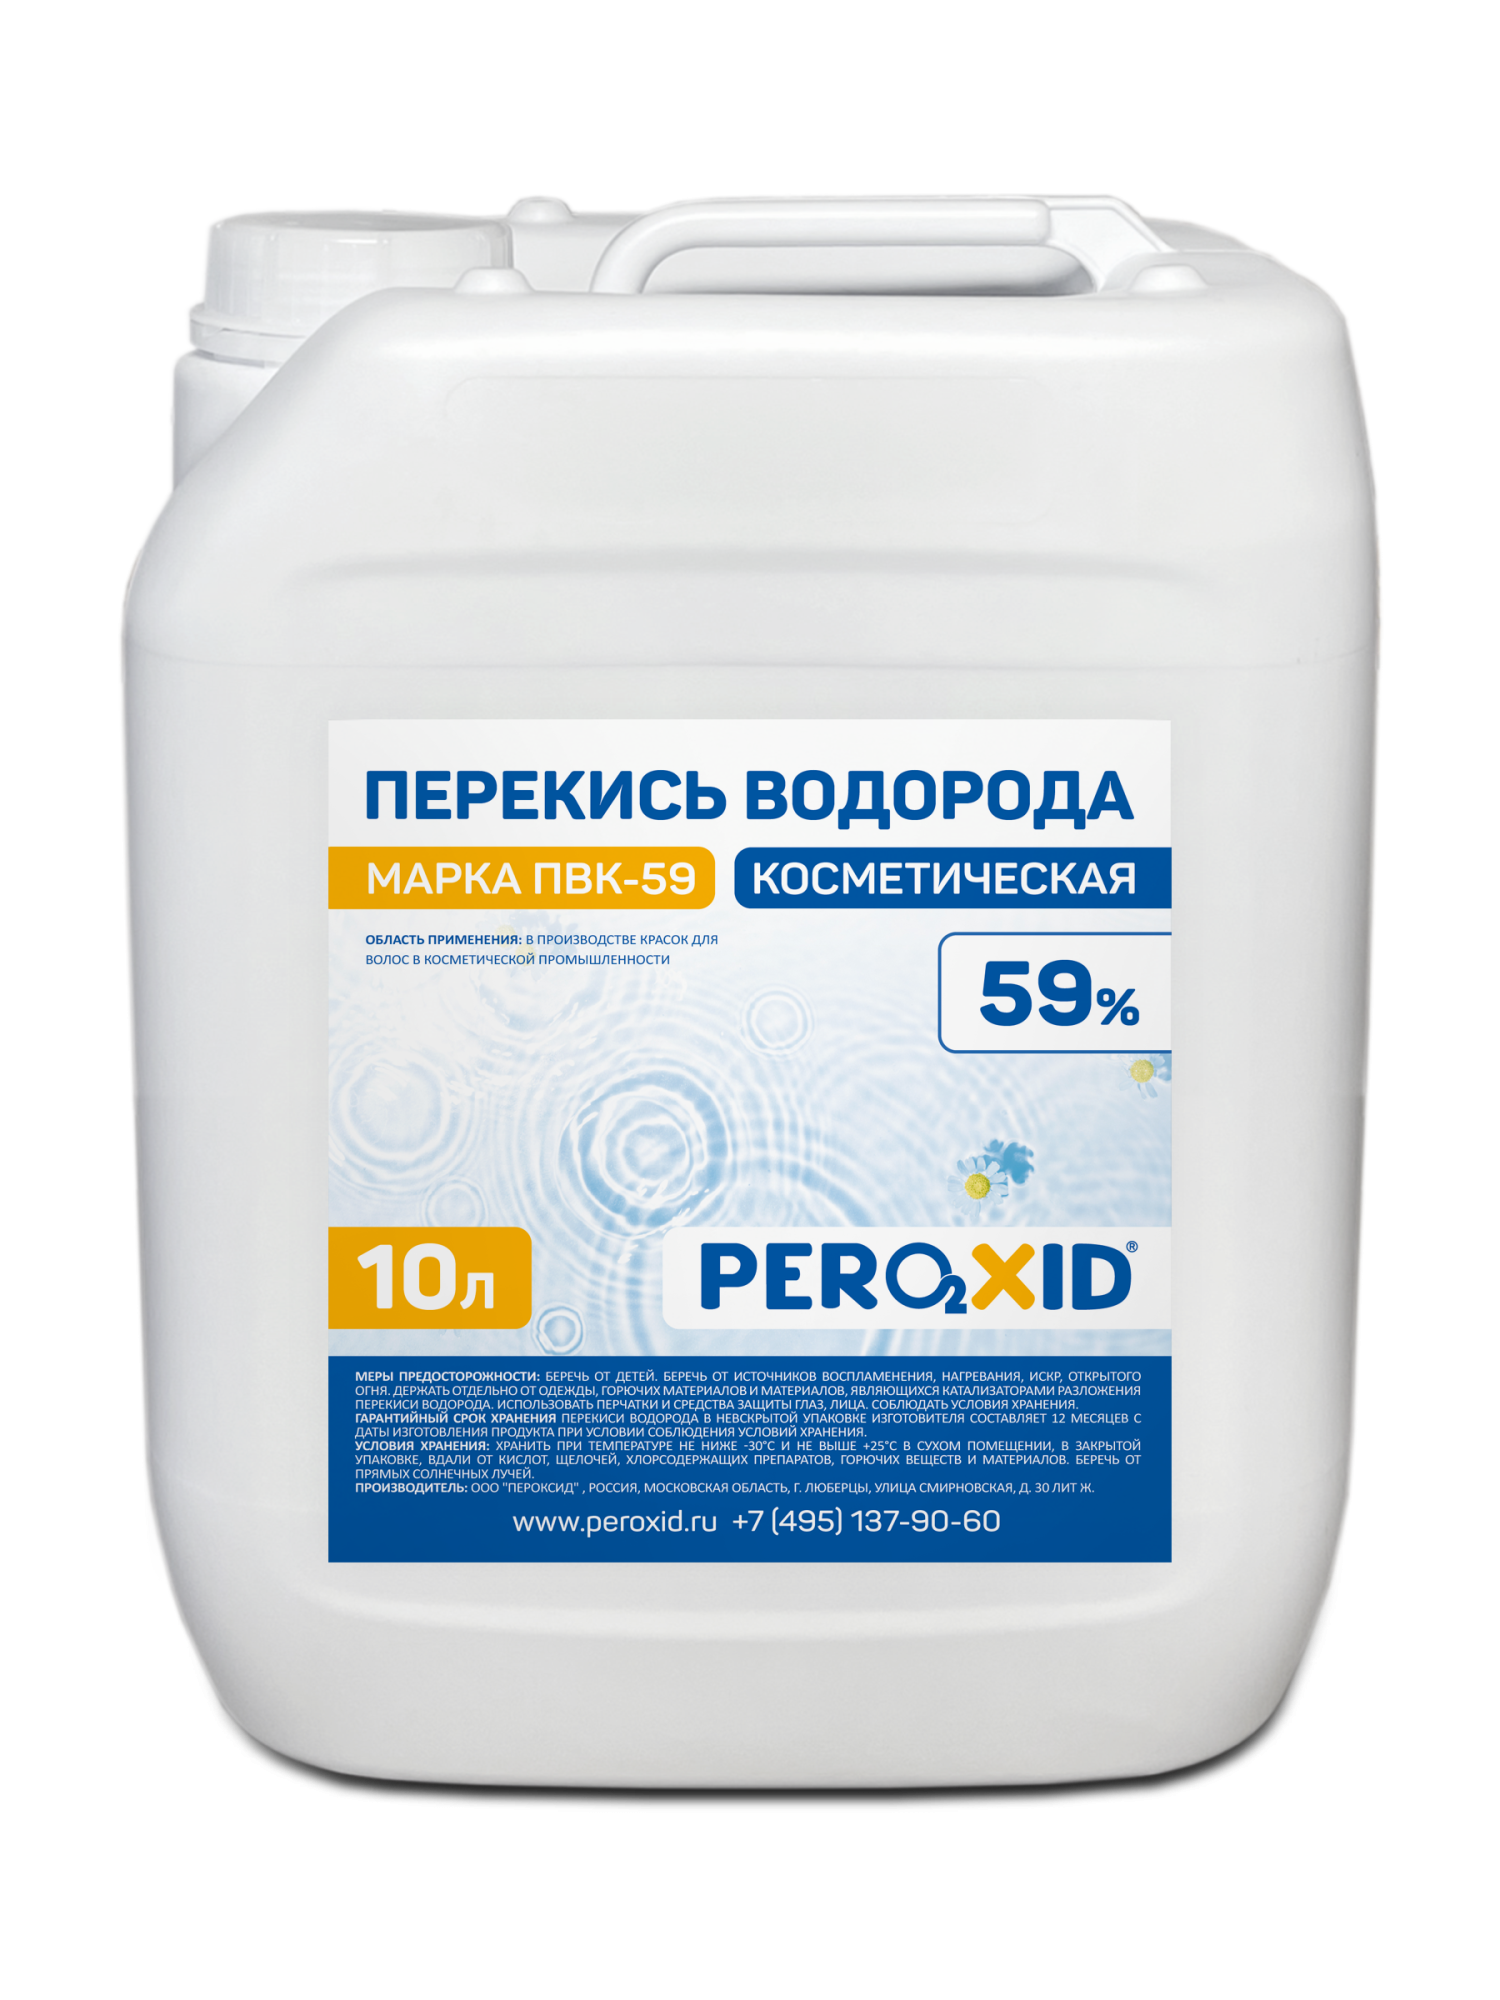 Перекись водорода косметическая PEROXID 59% марка ПВК - 59 ТУ 2123-005-25665344-2009 10 л/12 кг